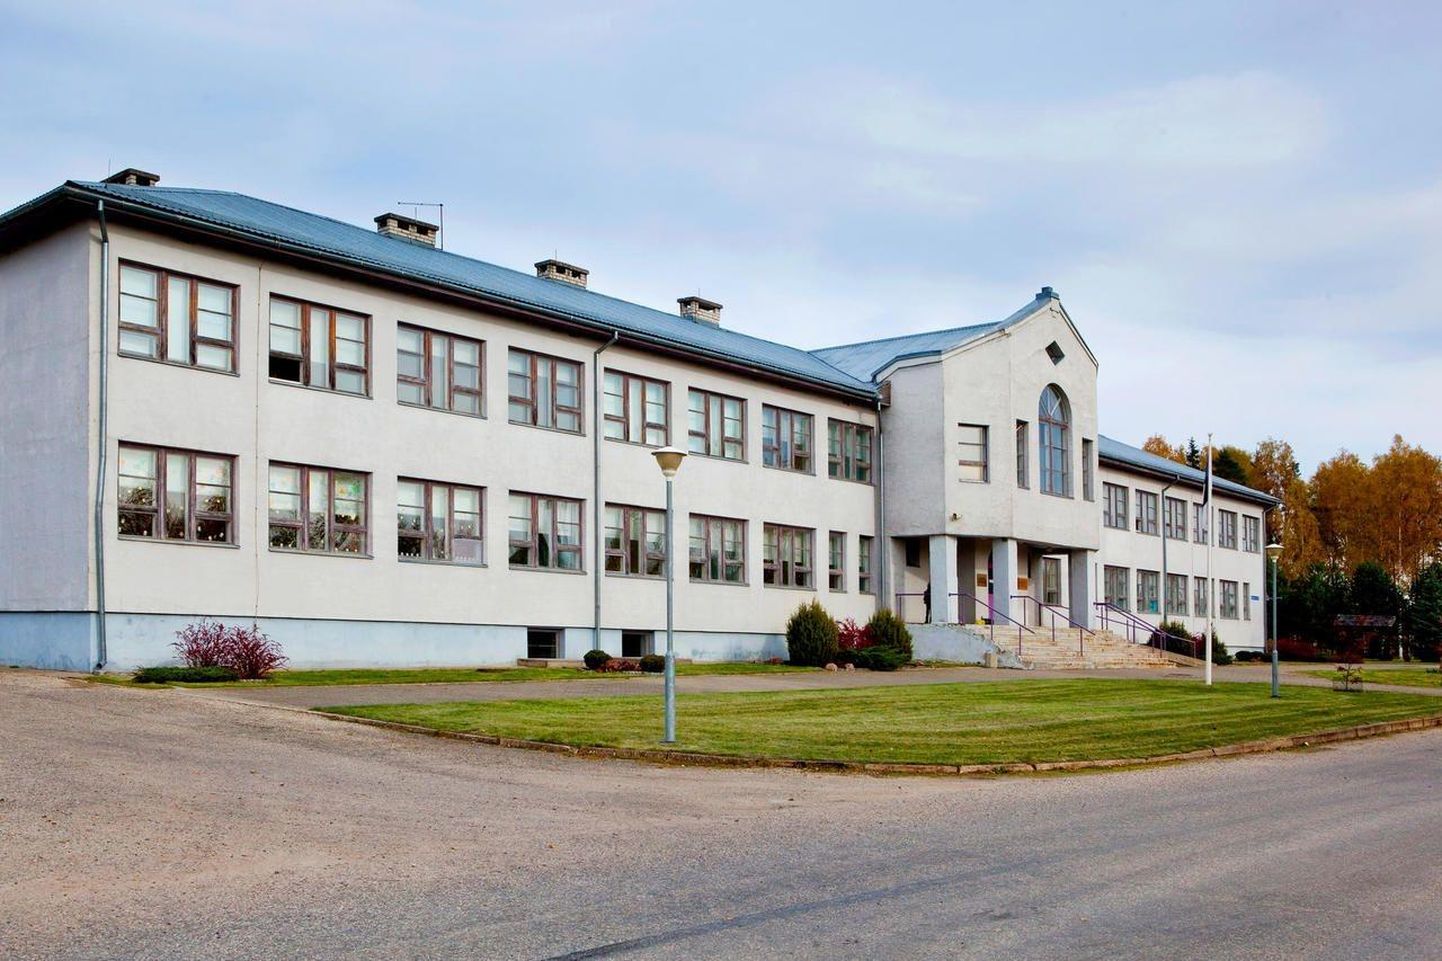 Sel õppeaastal käis Orava koolis 32 õpilast. Aastaid on õppurite arv olnud pidevas languses.